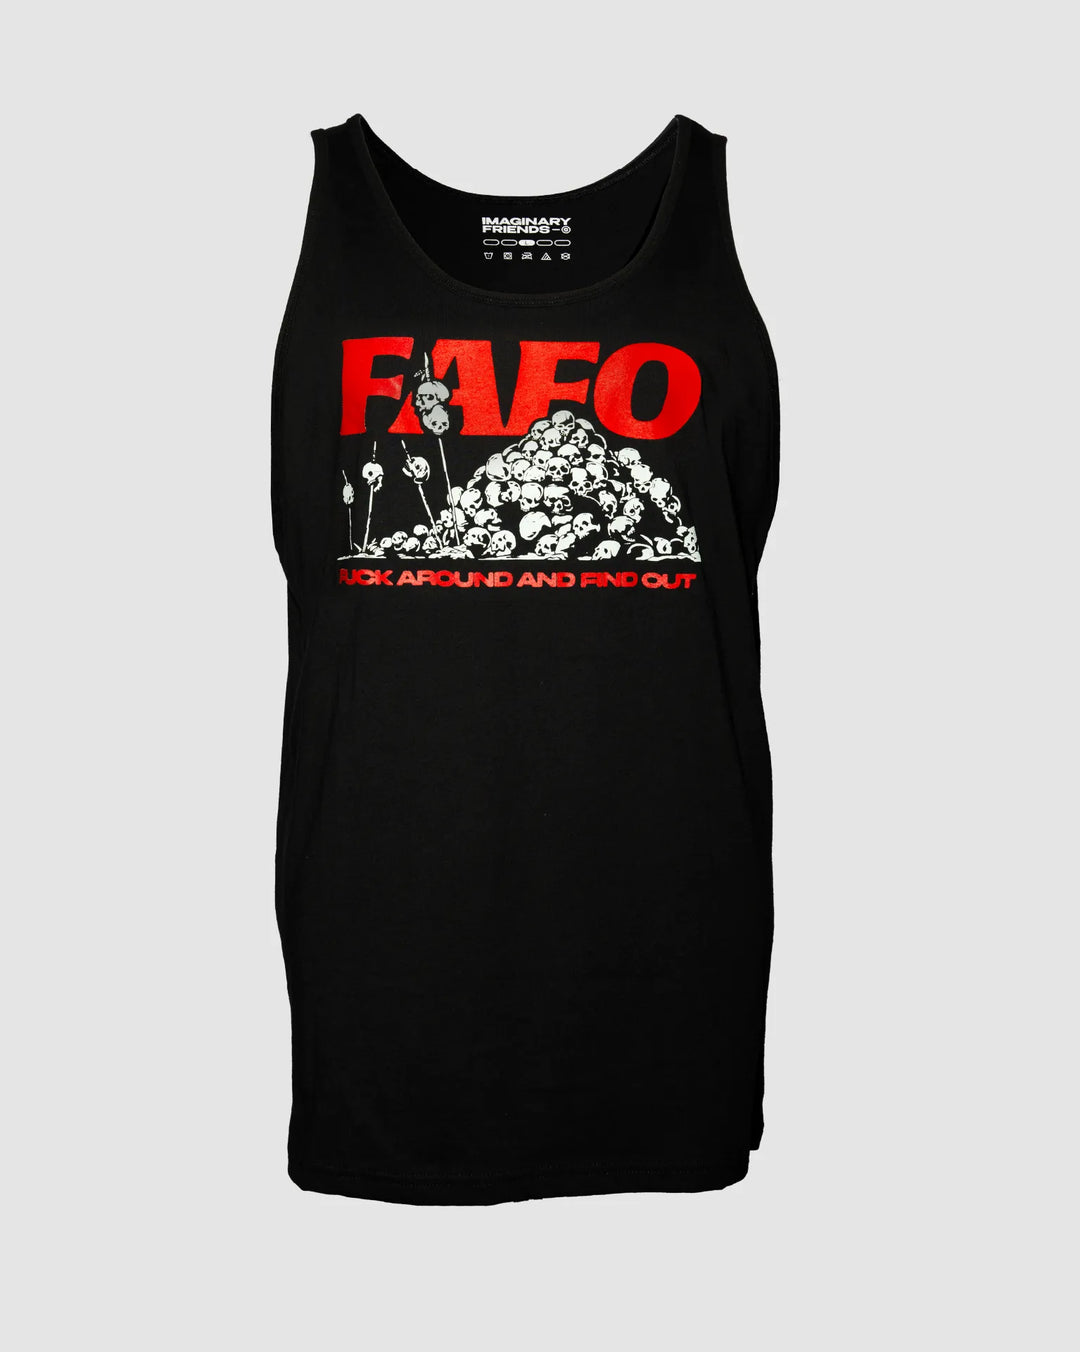 FAFO Core '23 Tank Top